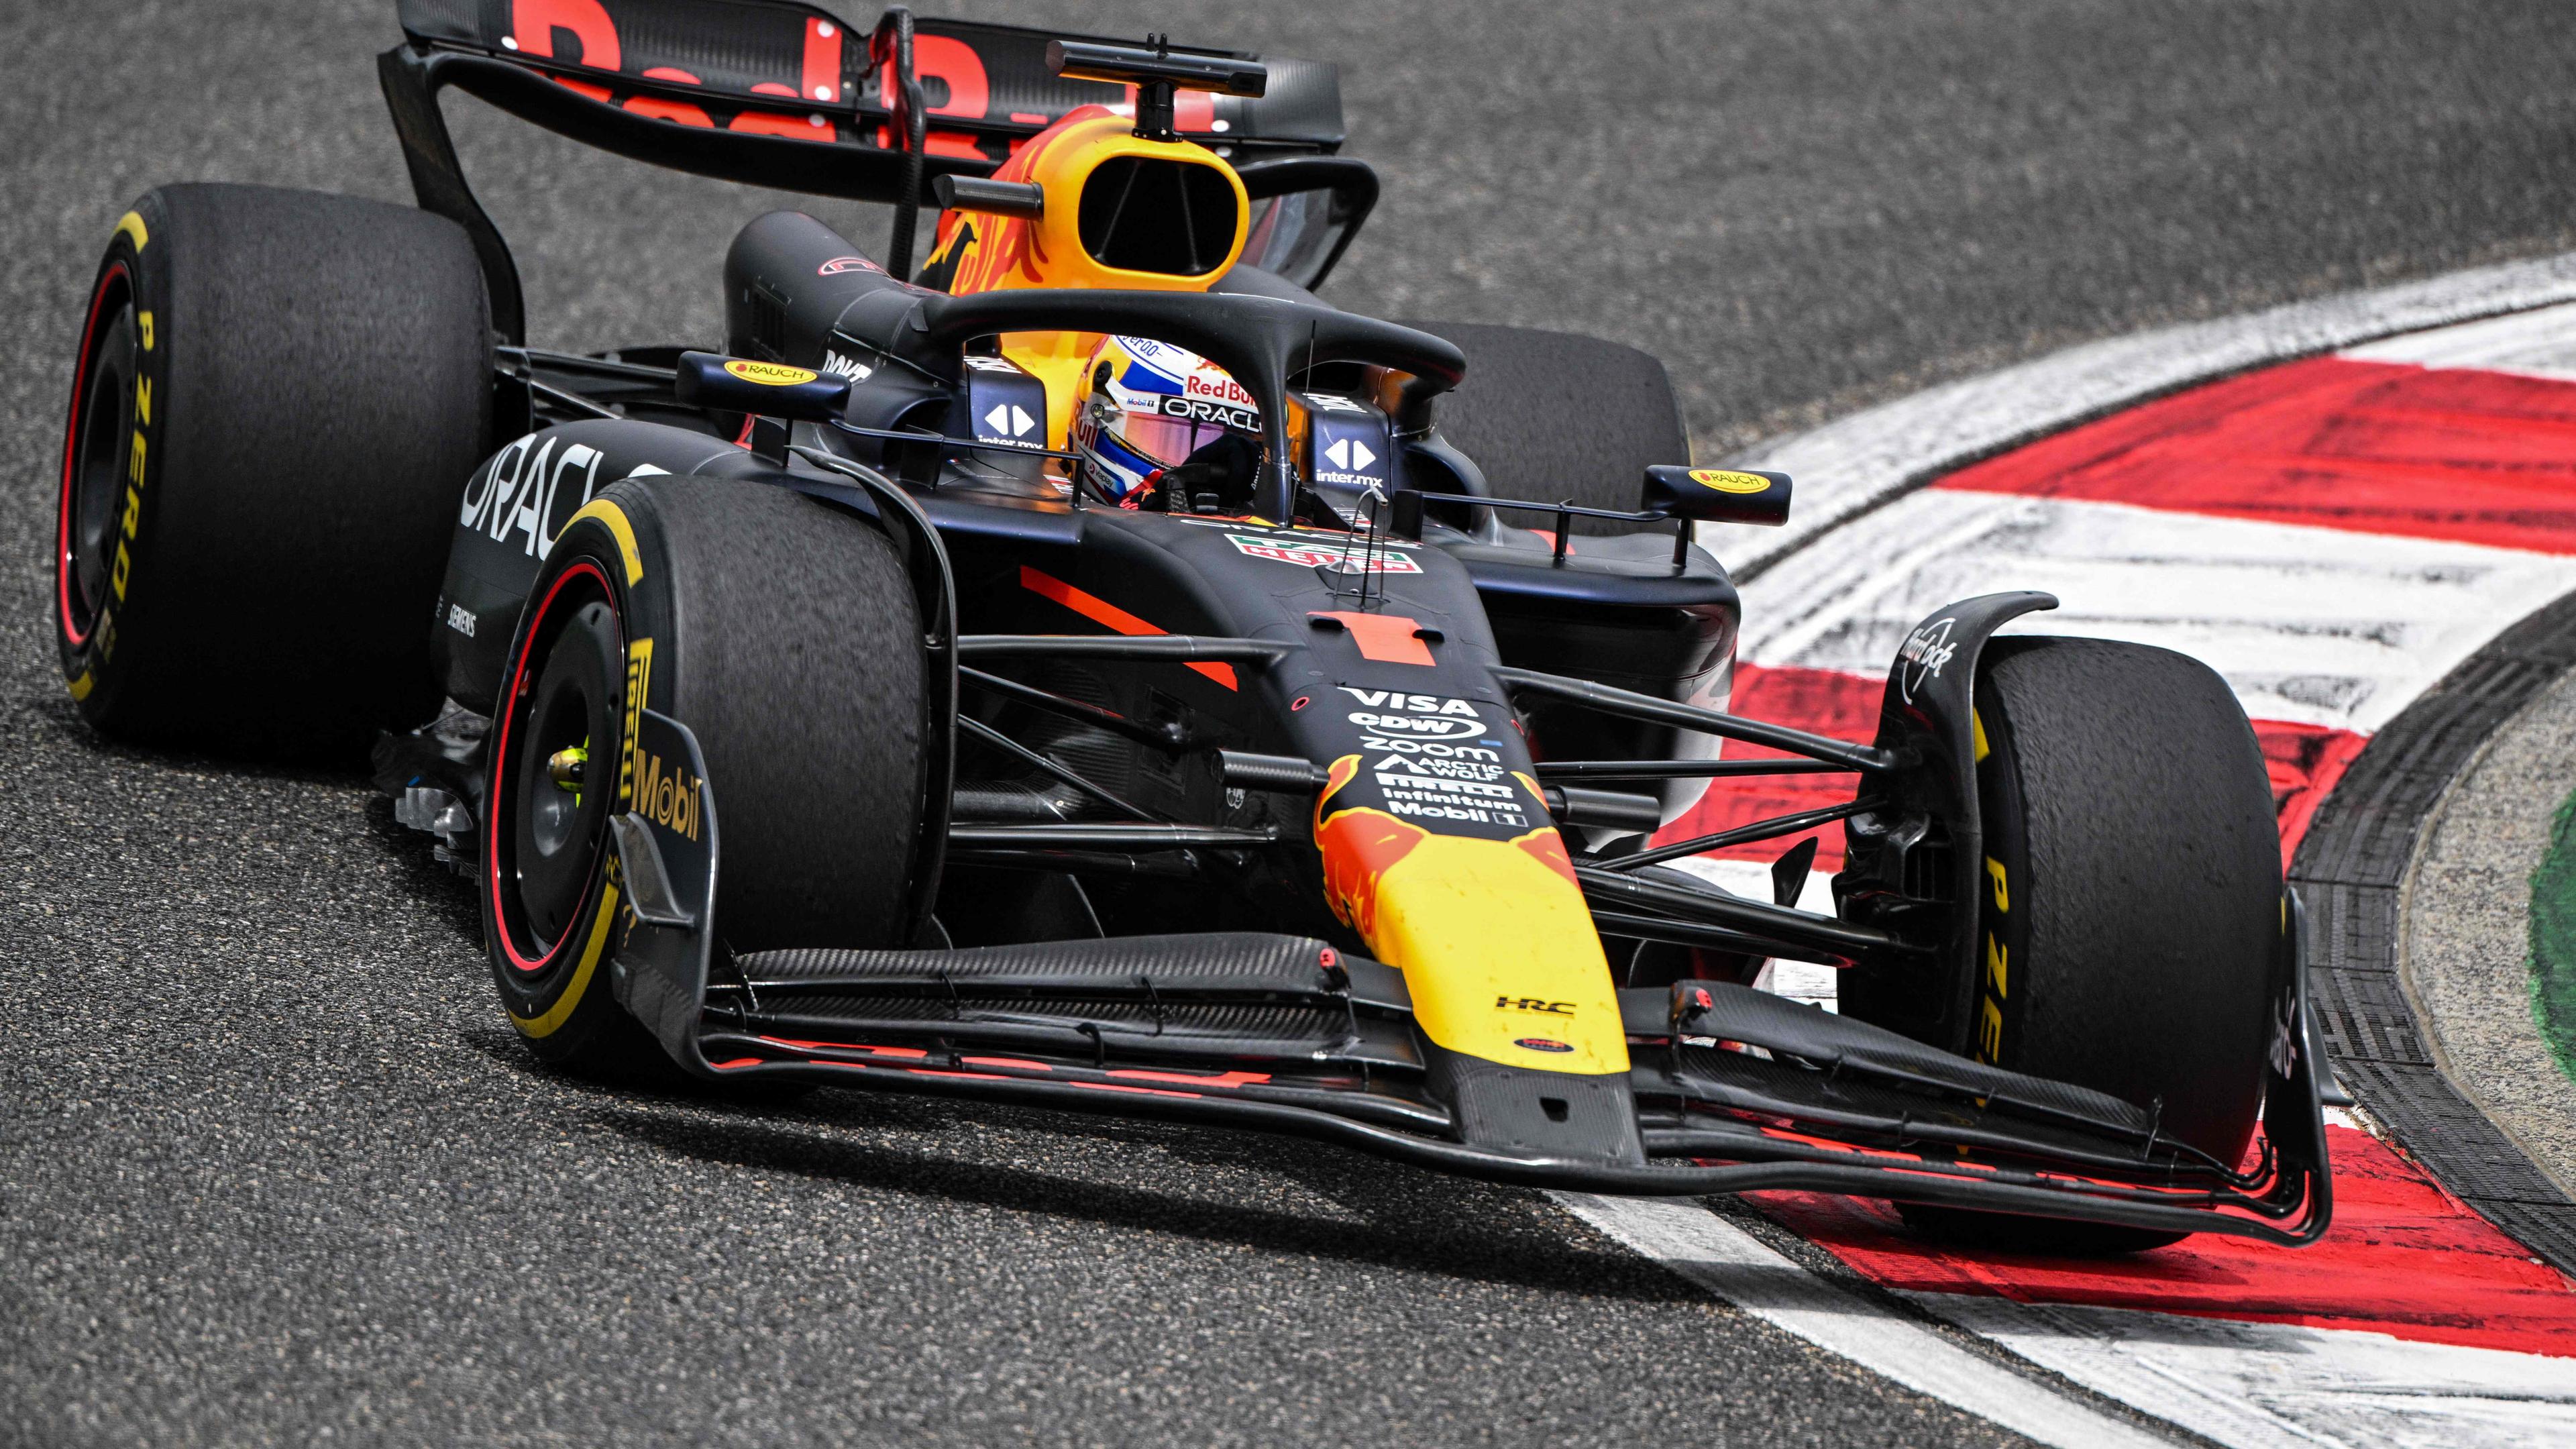 Für Max Verstappen im Red Bull-Wagen war es auch die perfekte Einstimmung auf die ebenfalls noch am Samstag anstehende Qualifikation für den Großen Preis von China.